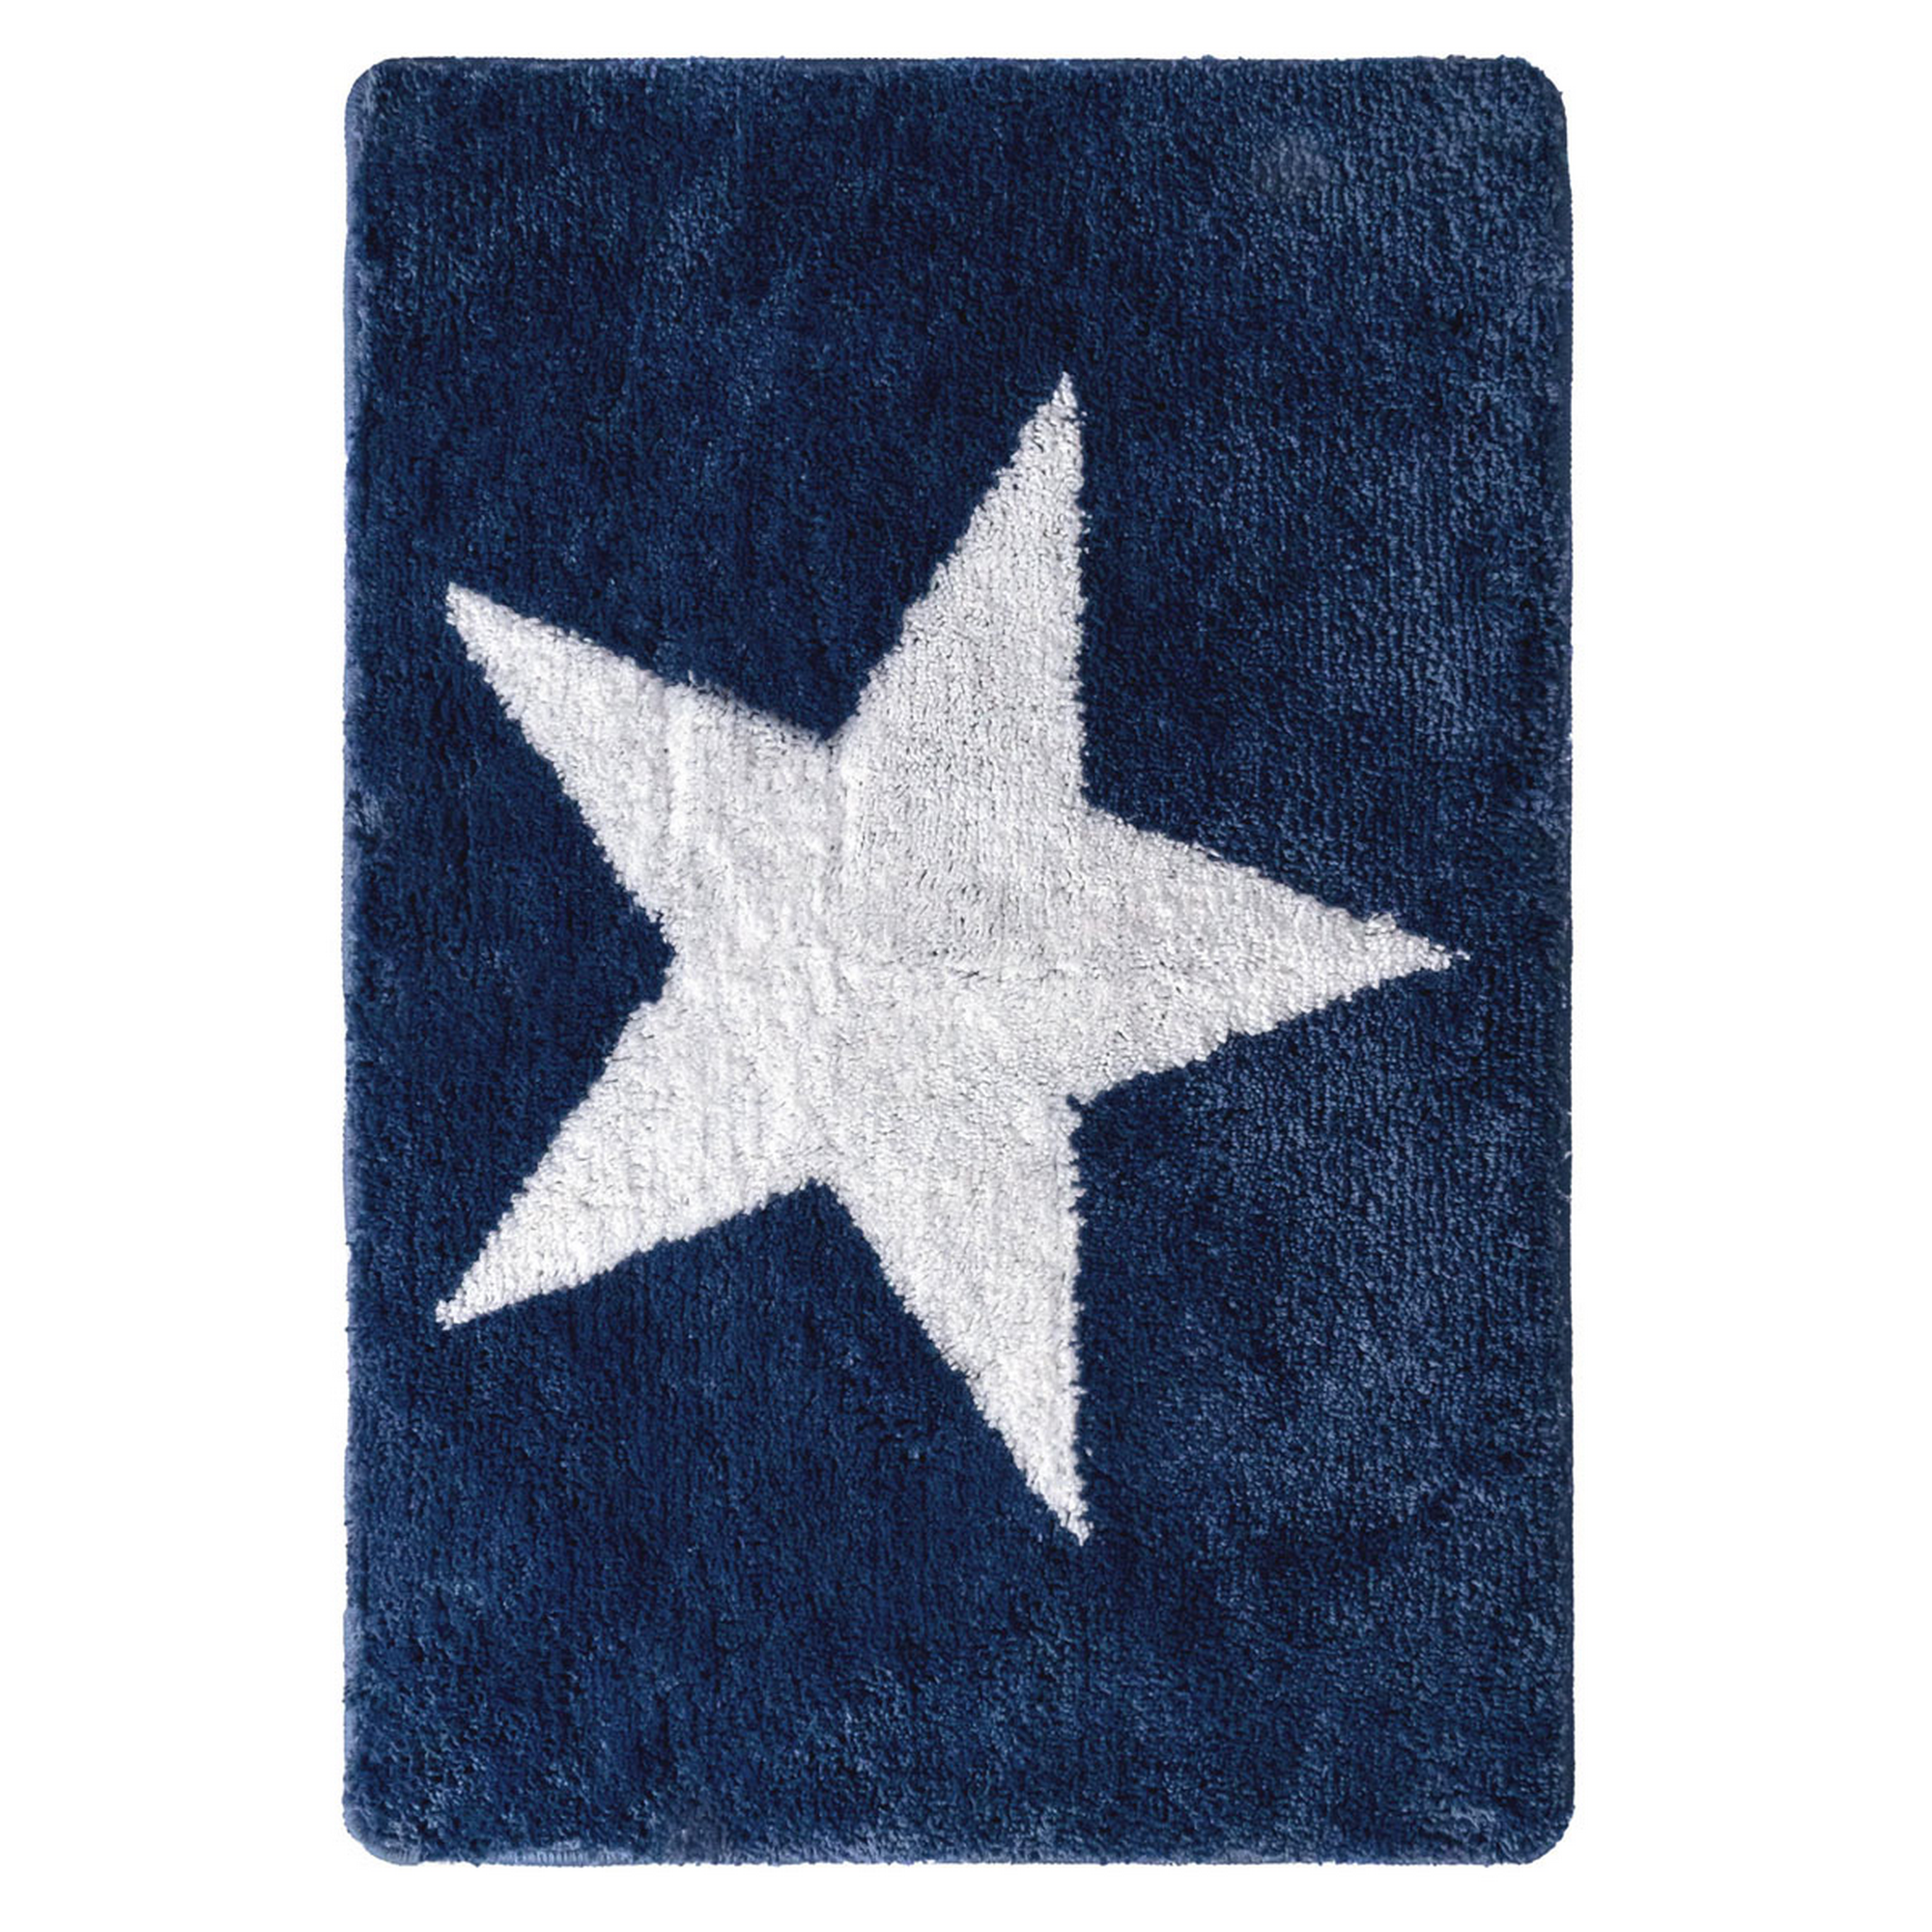 Badteppich 'Star' blau 55 x 85 cm + product picture